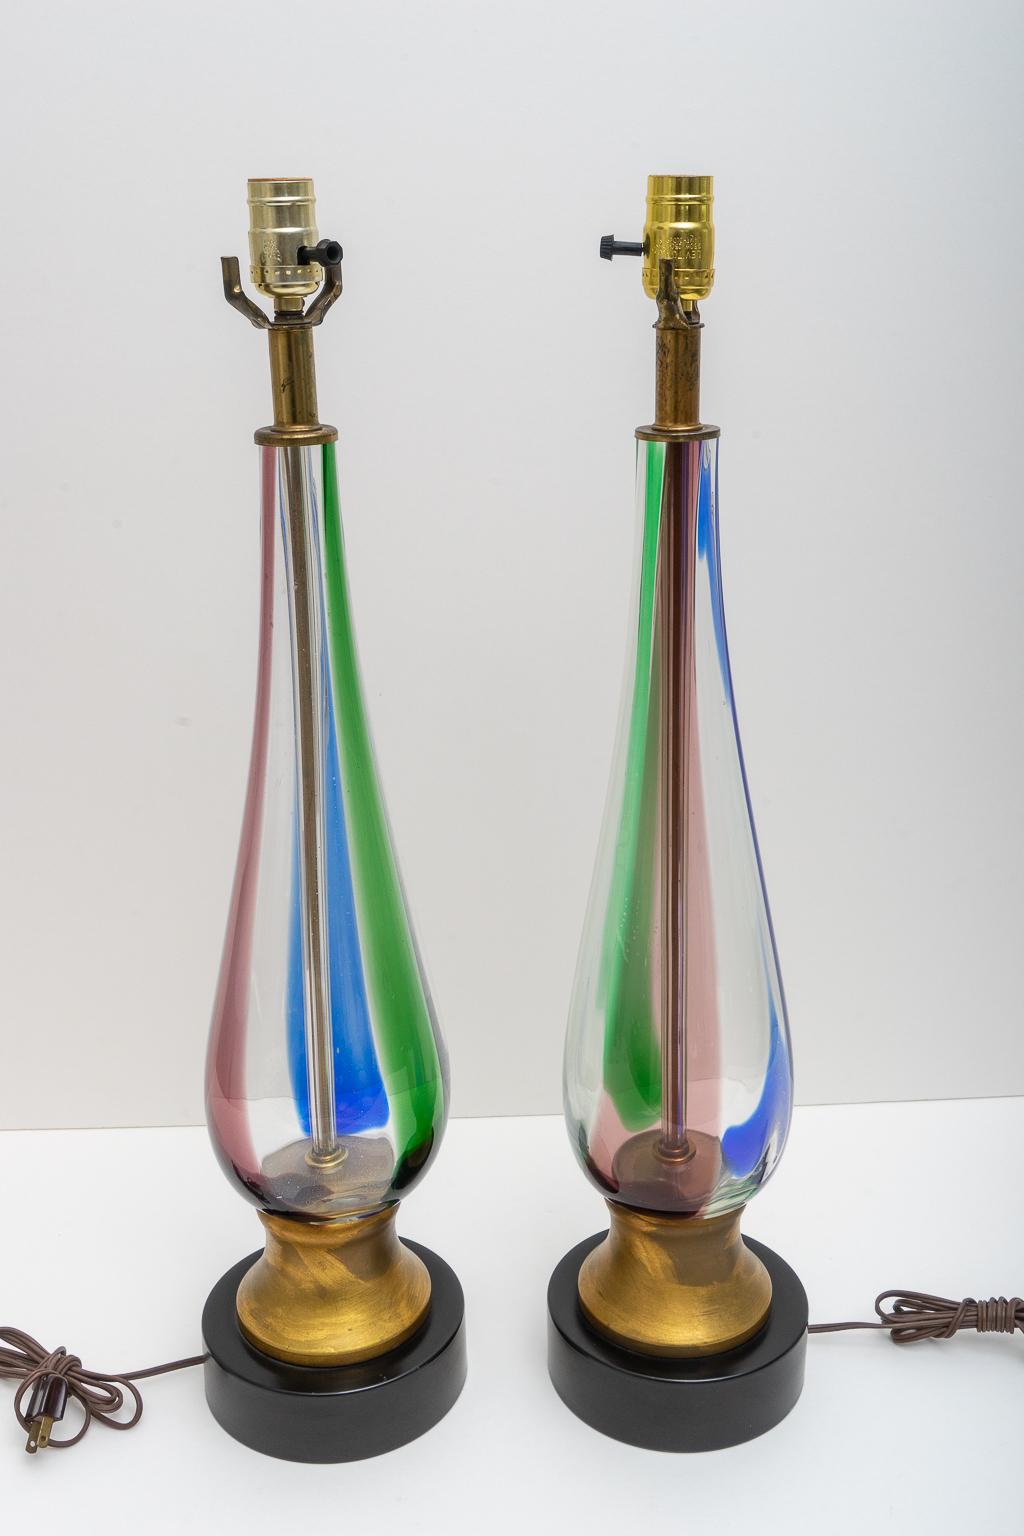 Dieses stilvolle und schicke Paar Tischlampen aus Muranoglas von Seguso stammt aus den 1970er Jahren und wurde für Marbro Lamps hergestellt.

Hinweis: Die Lampen wurden professionell neu verkabelt und haben neue Fassungen.